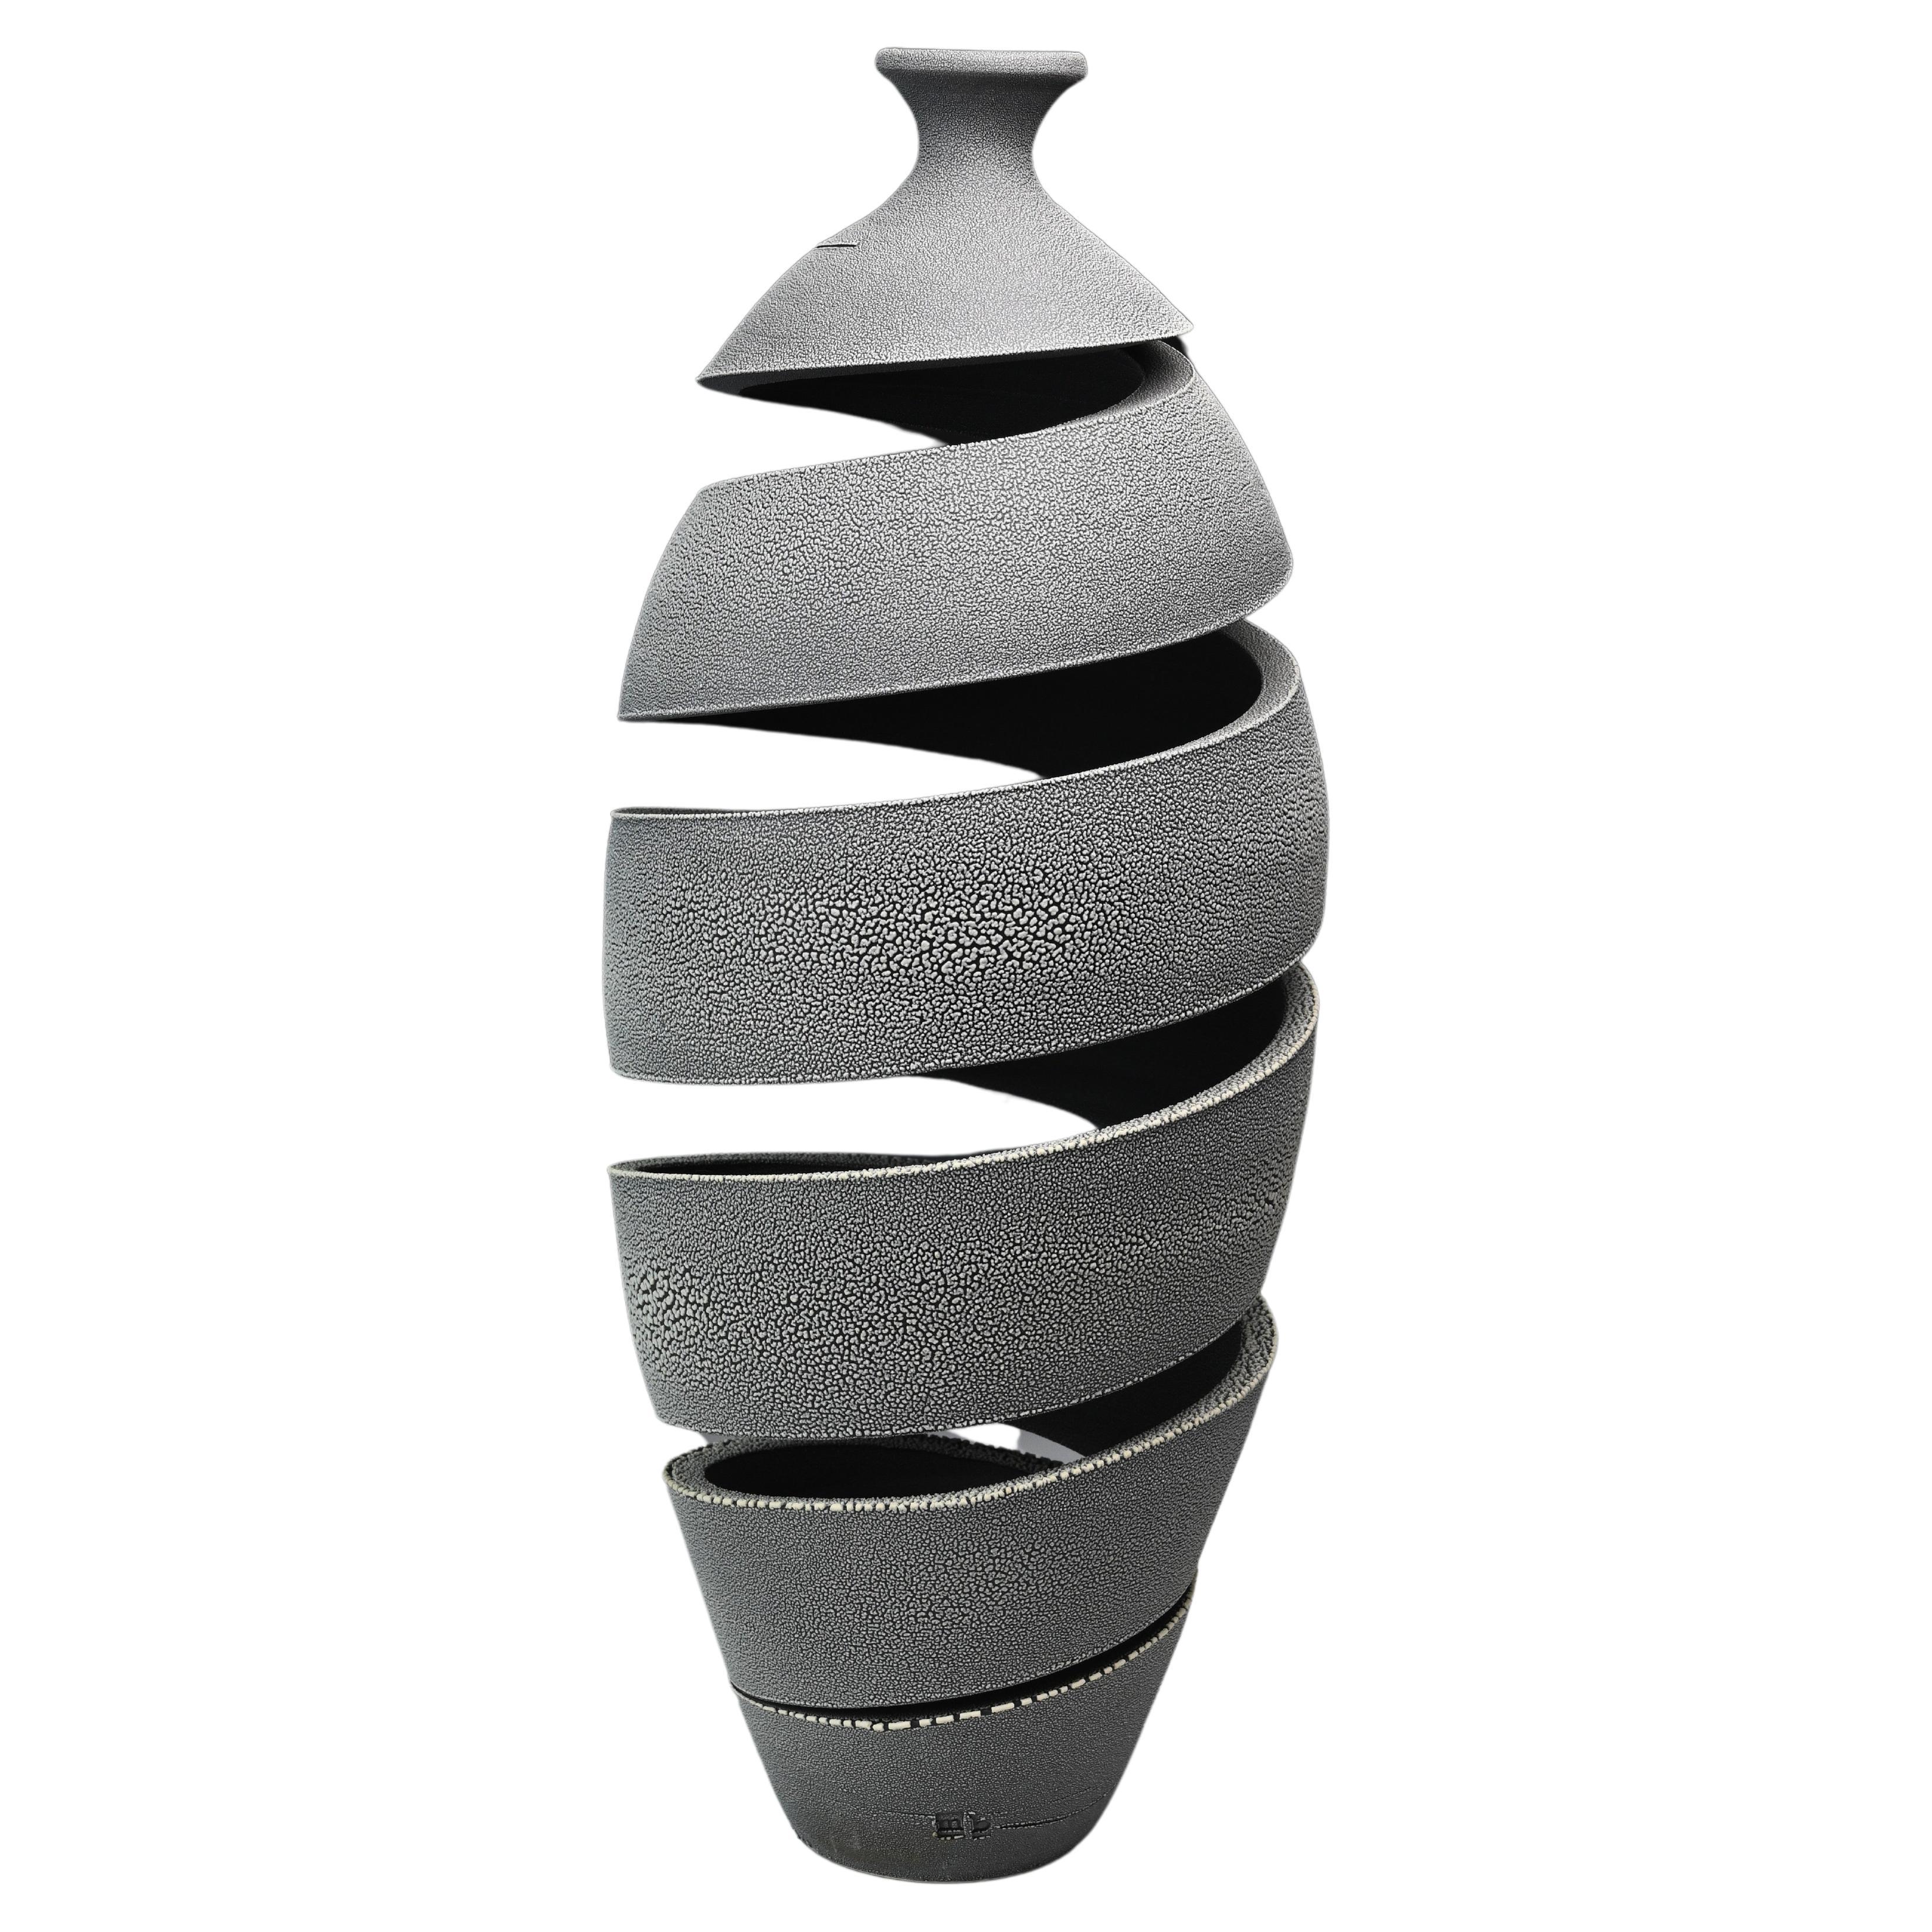 Spatial Spiral: Schnecke – Abstrakte spiralförmige Keramikskulptur von Michael Boroniec